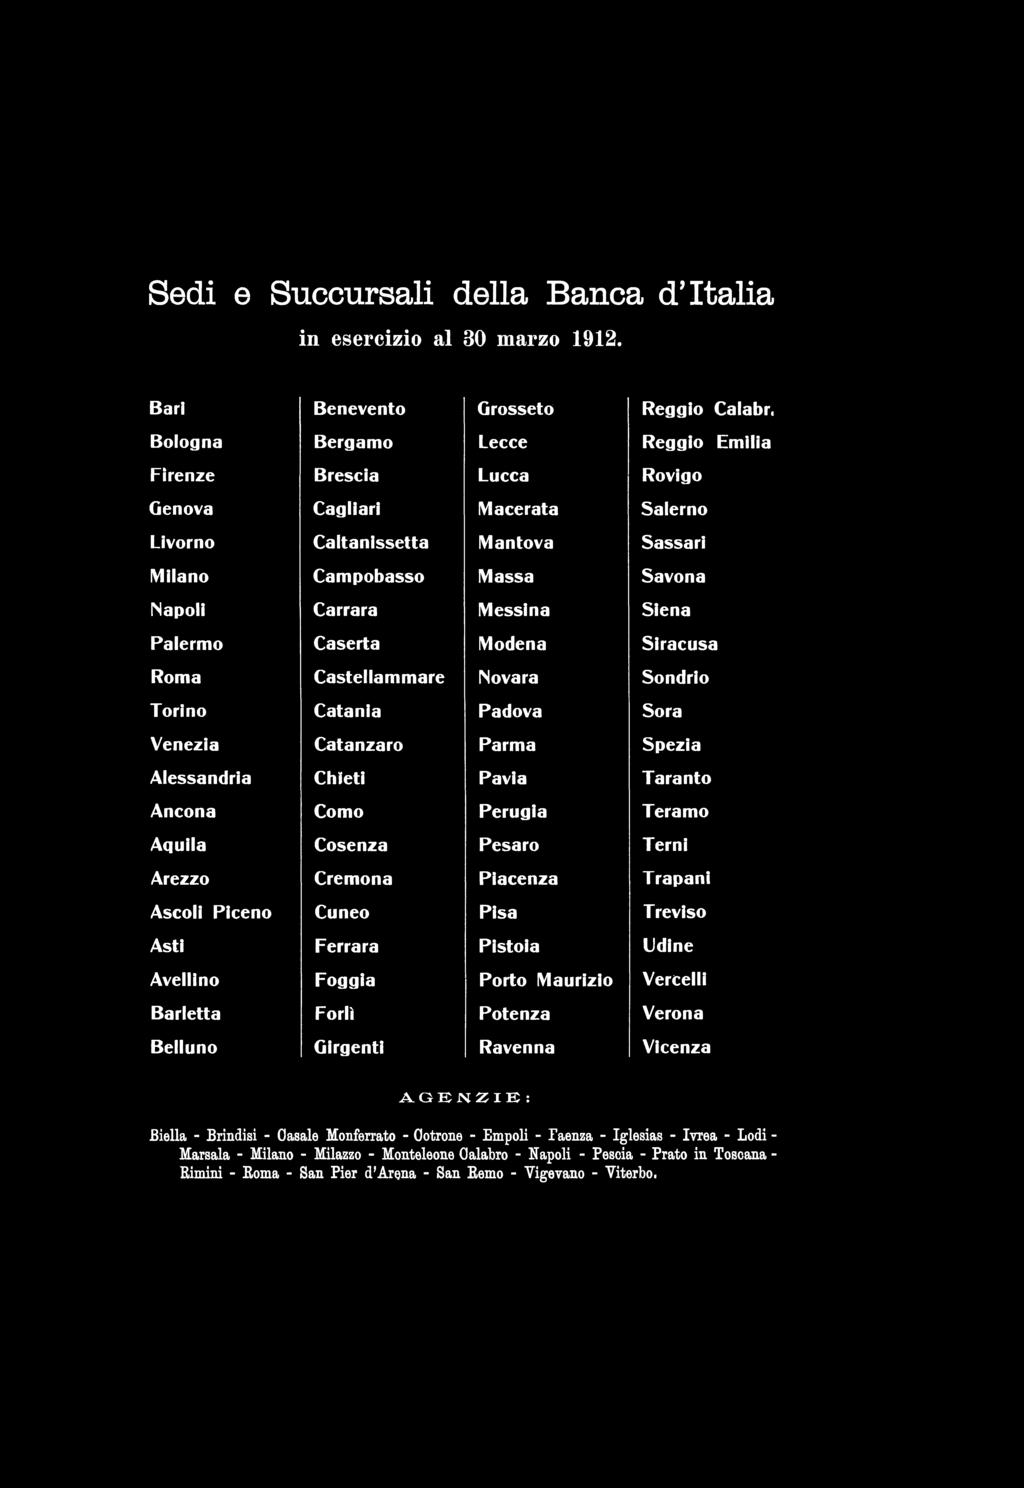 Sedi e Succursali della Banca d'italia in eser c izio al 30 m arzo 1912.